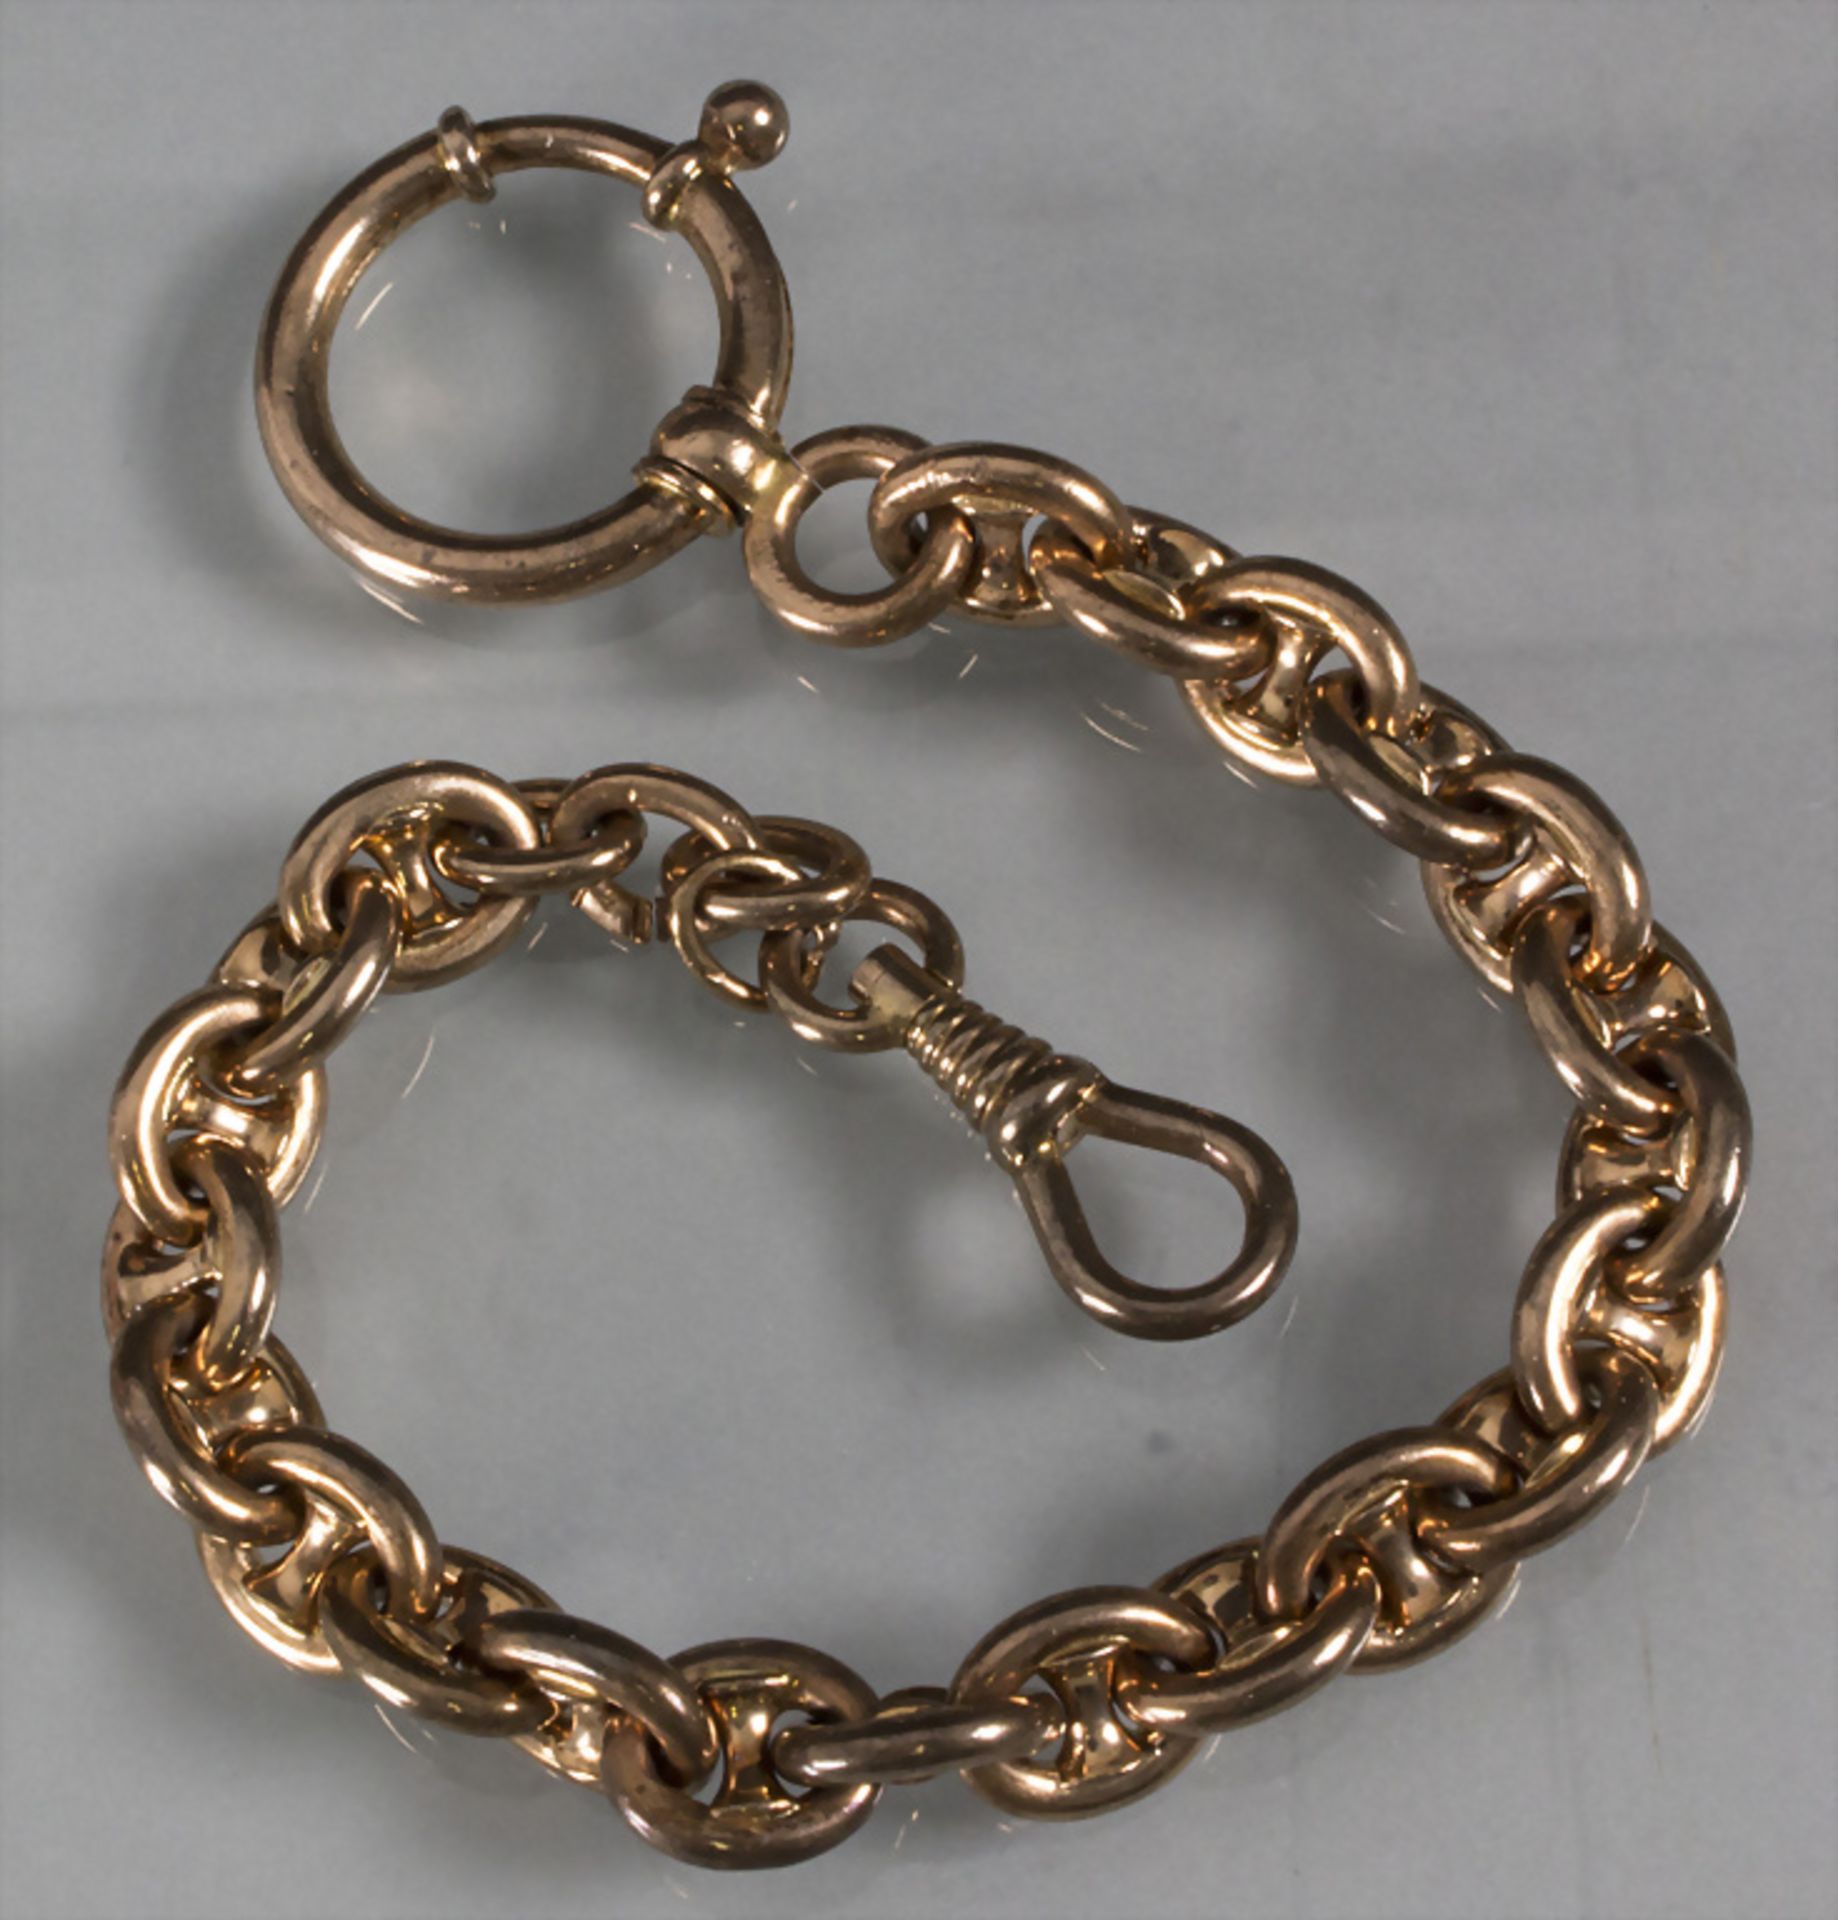 Taschenuhrkette / A 14ct gold pocket watch chain